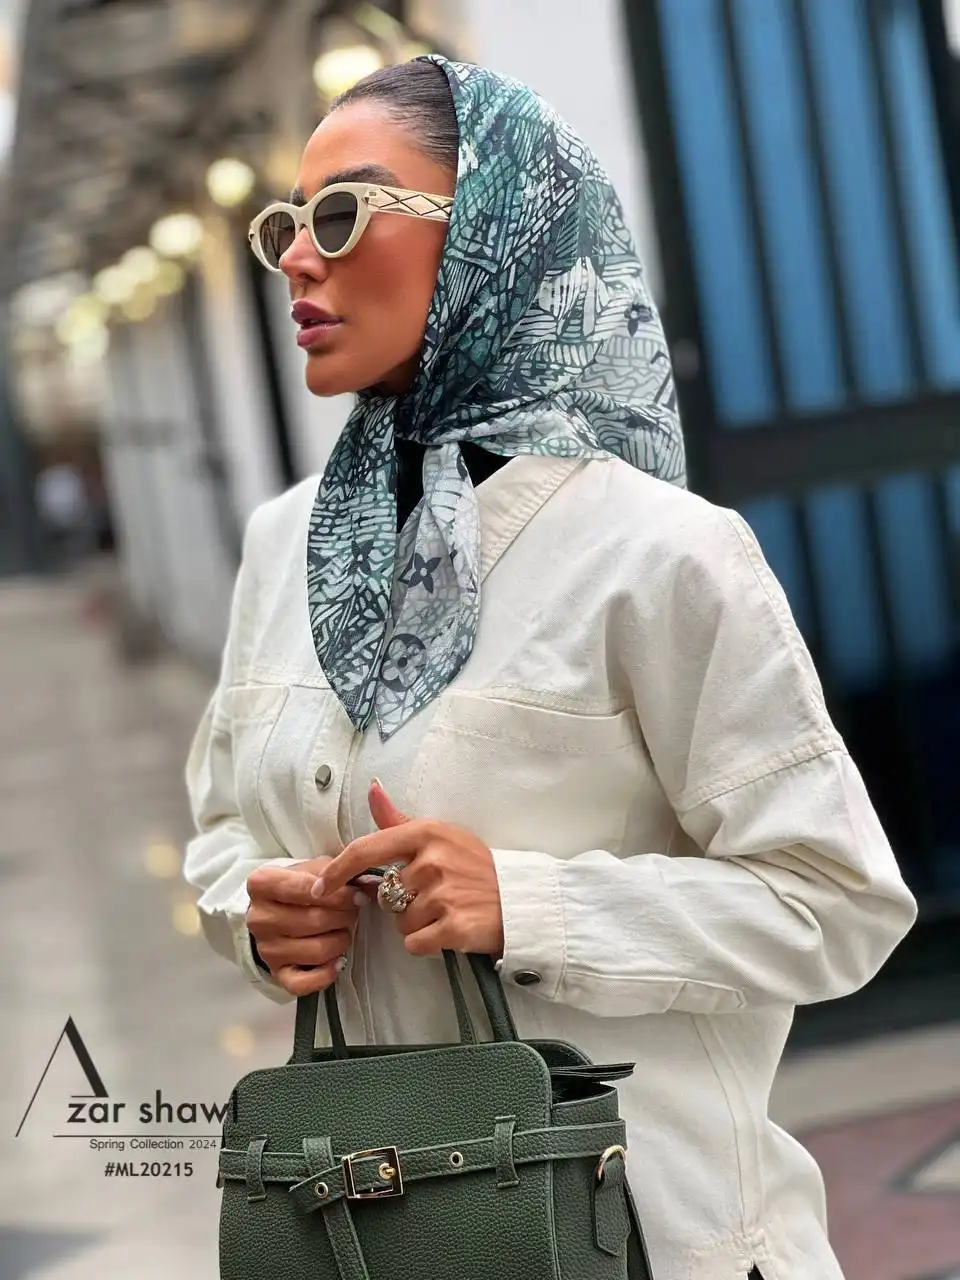 خرید روسری قواره کوچک نخی بهاره سبز طیفی - خرید از آذرشال azarshawl